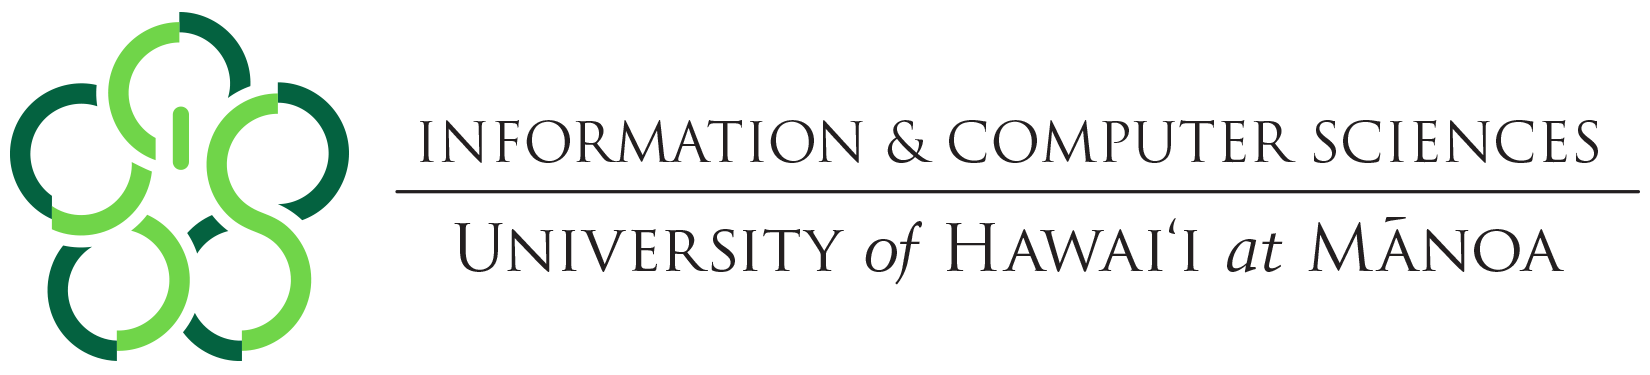 Information & Computer Sciences